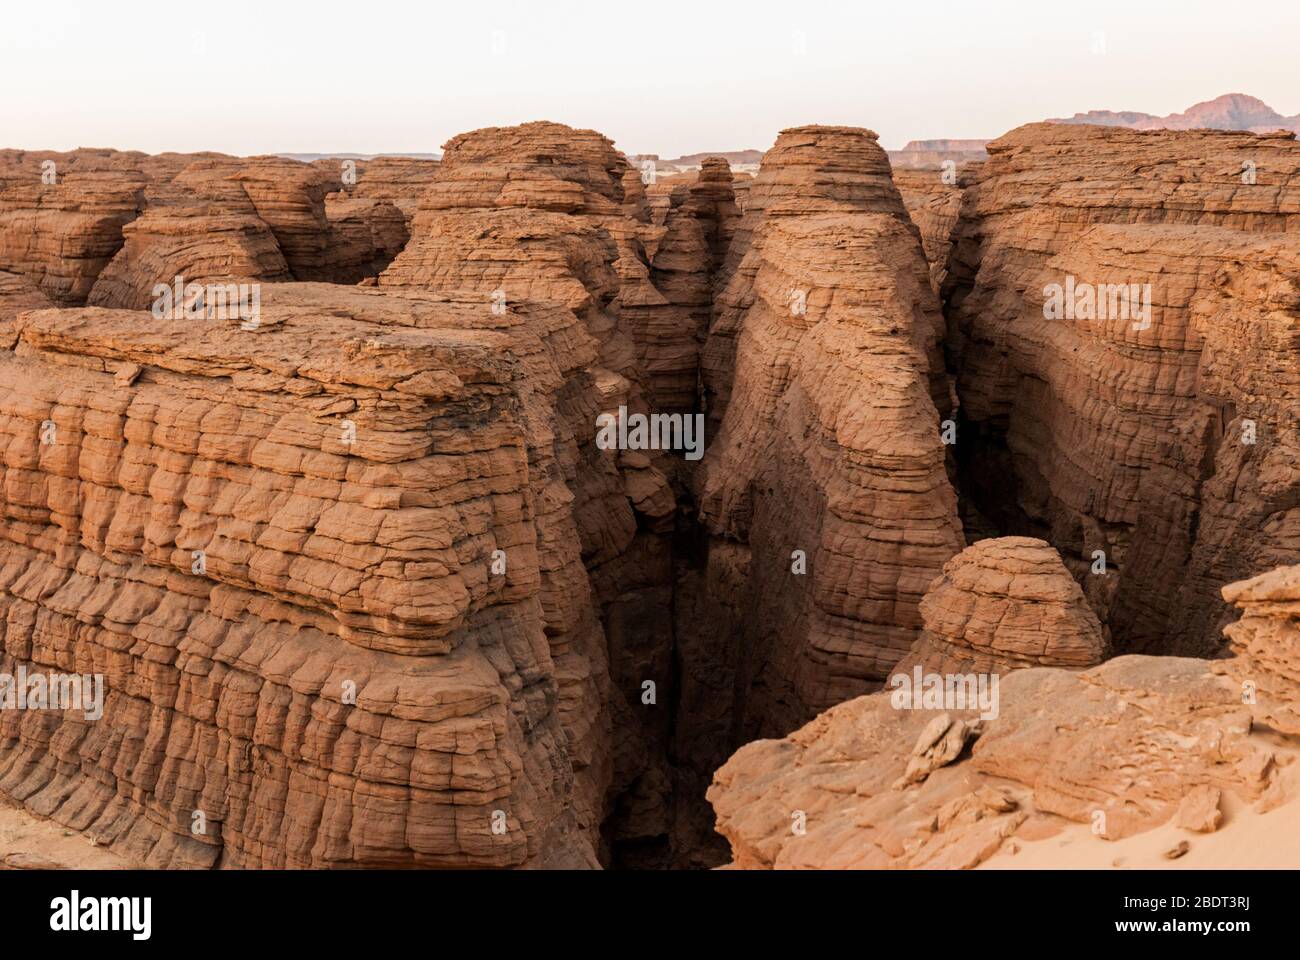 Labyrithe de formation de roches appelé d'Oyo dans le plateau Ennedi sur dessert Sahara, Tchad, Afrique. Banque D'Images